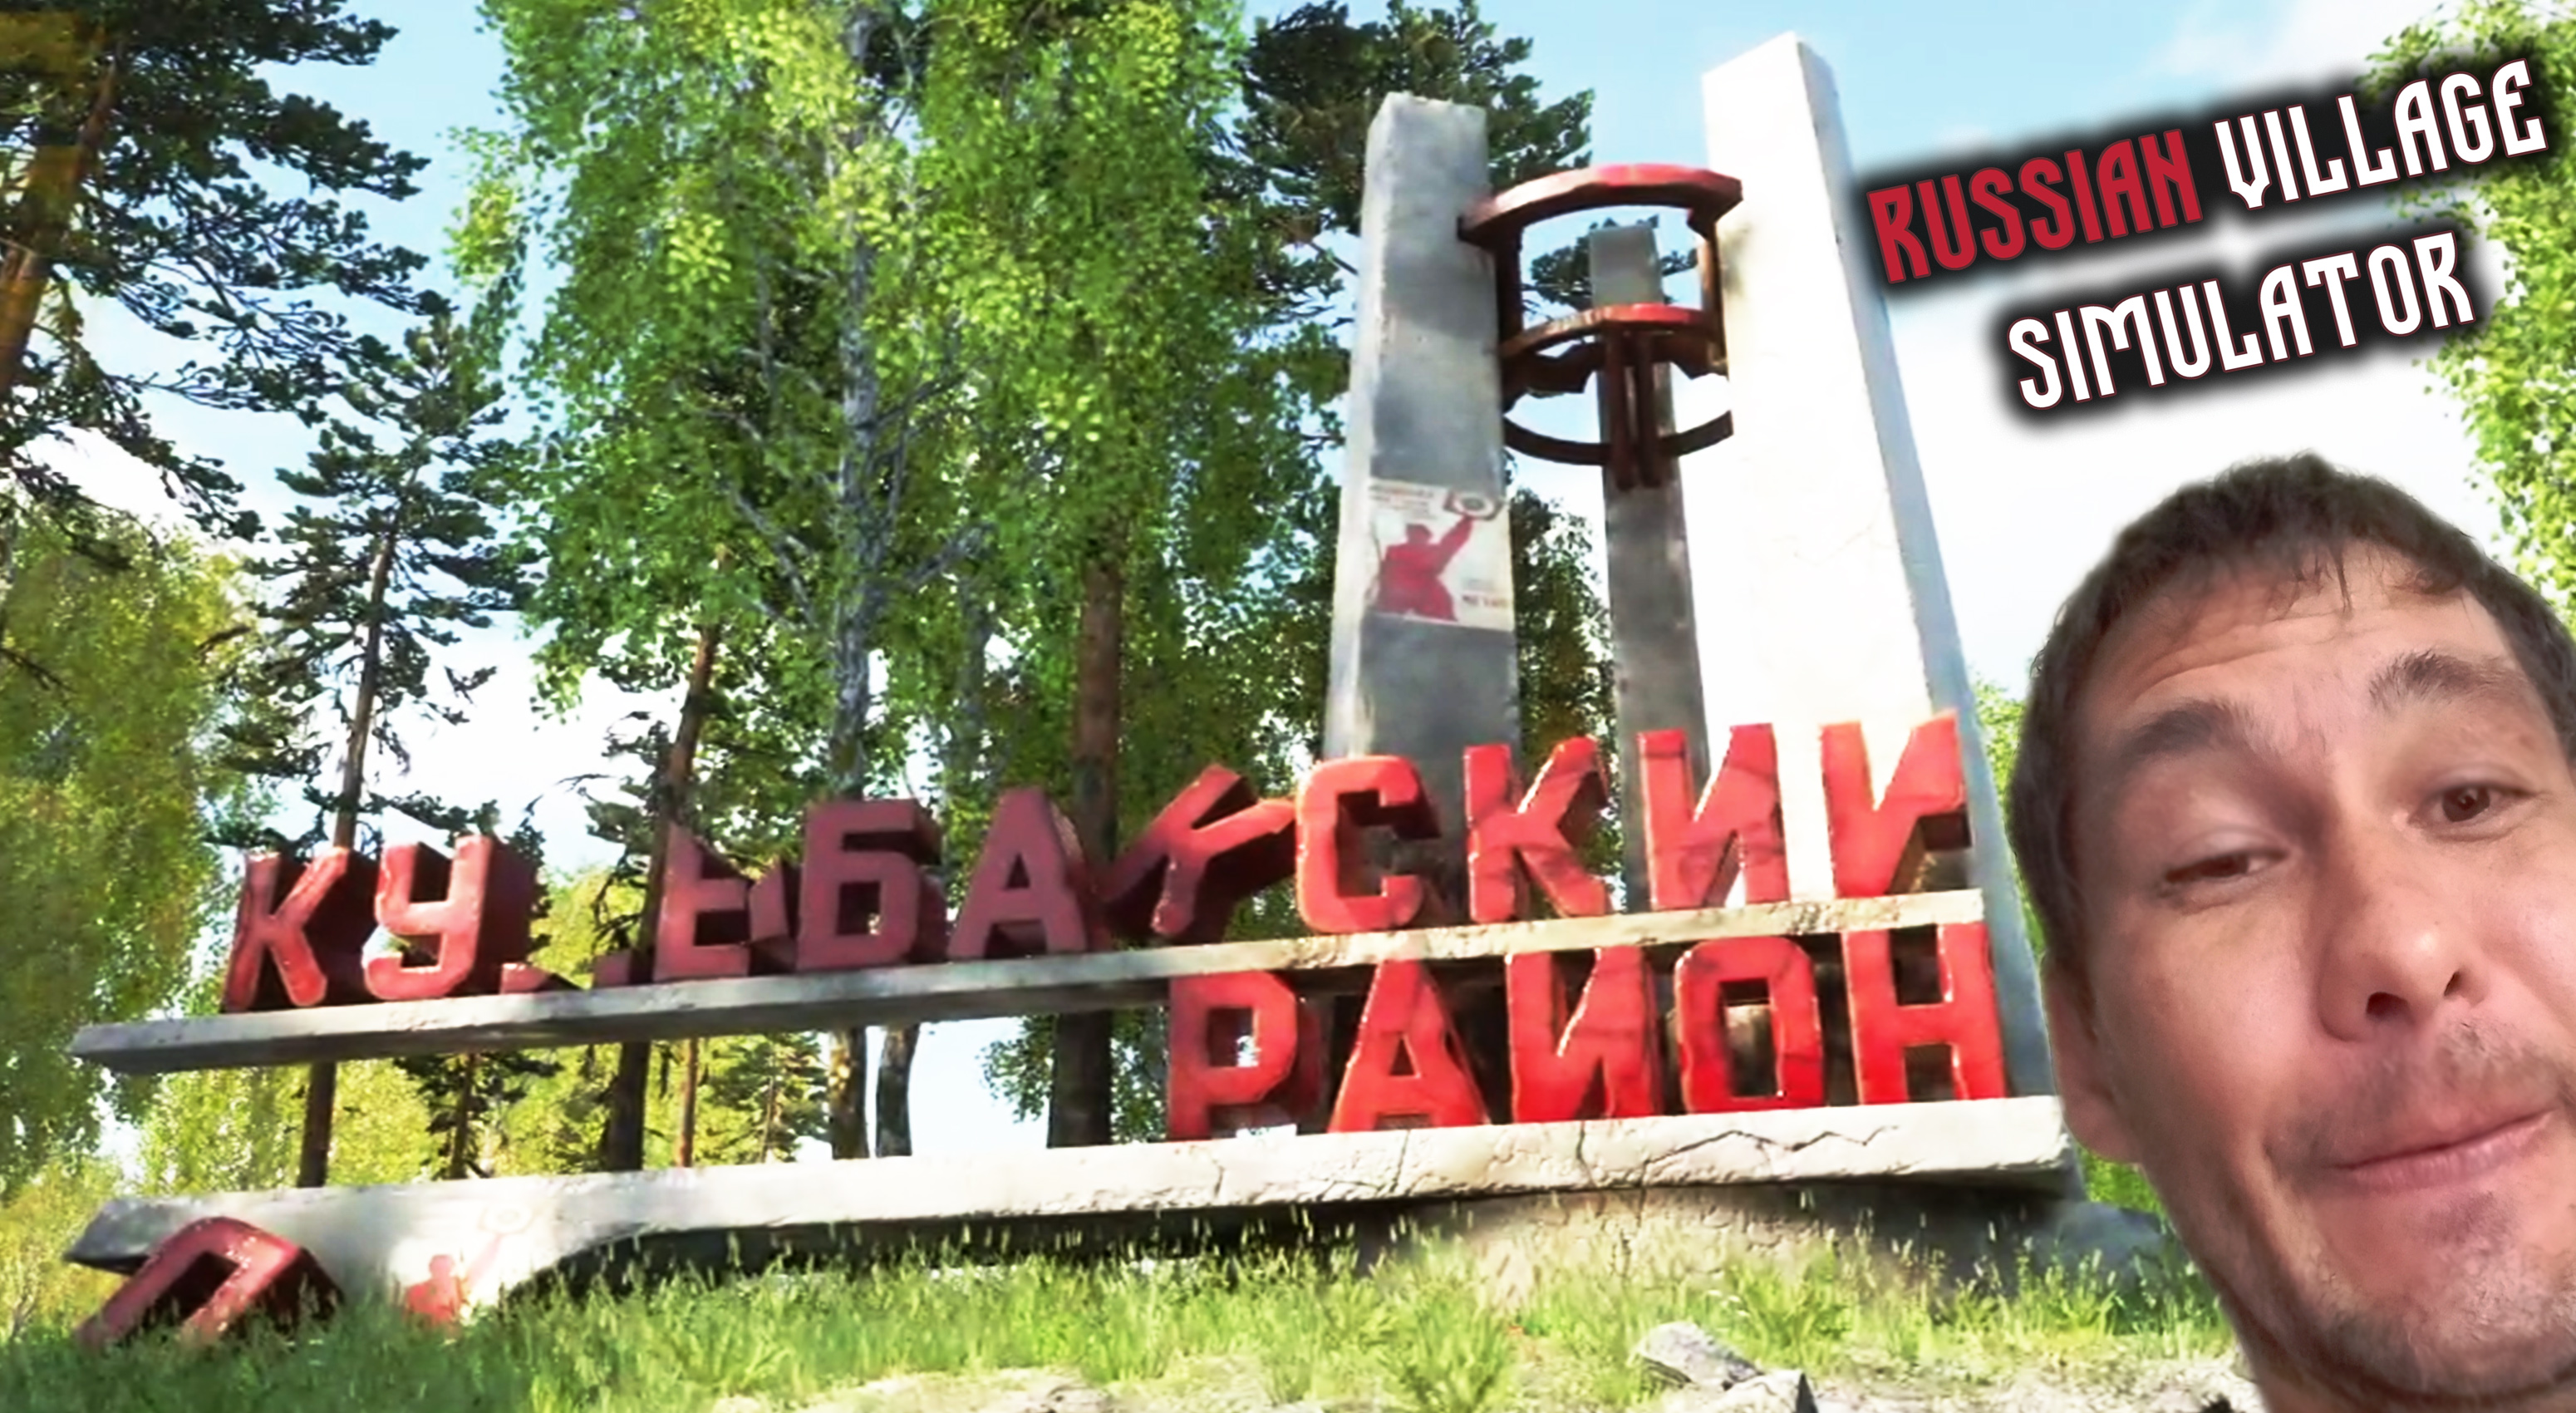 СТОЛИЦА ДЕРЕВНИ ◈ Russian Village Simulator #5